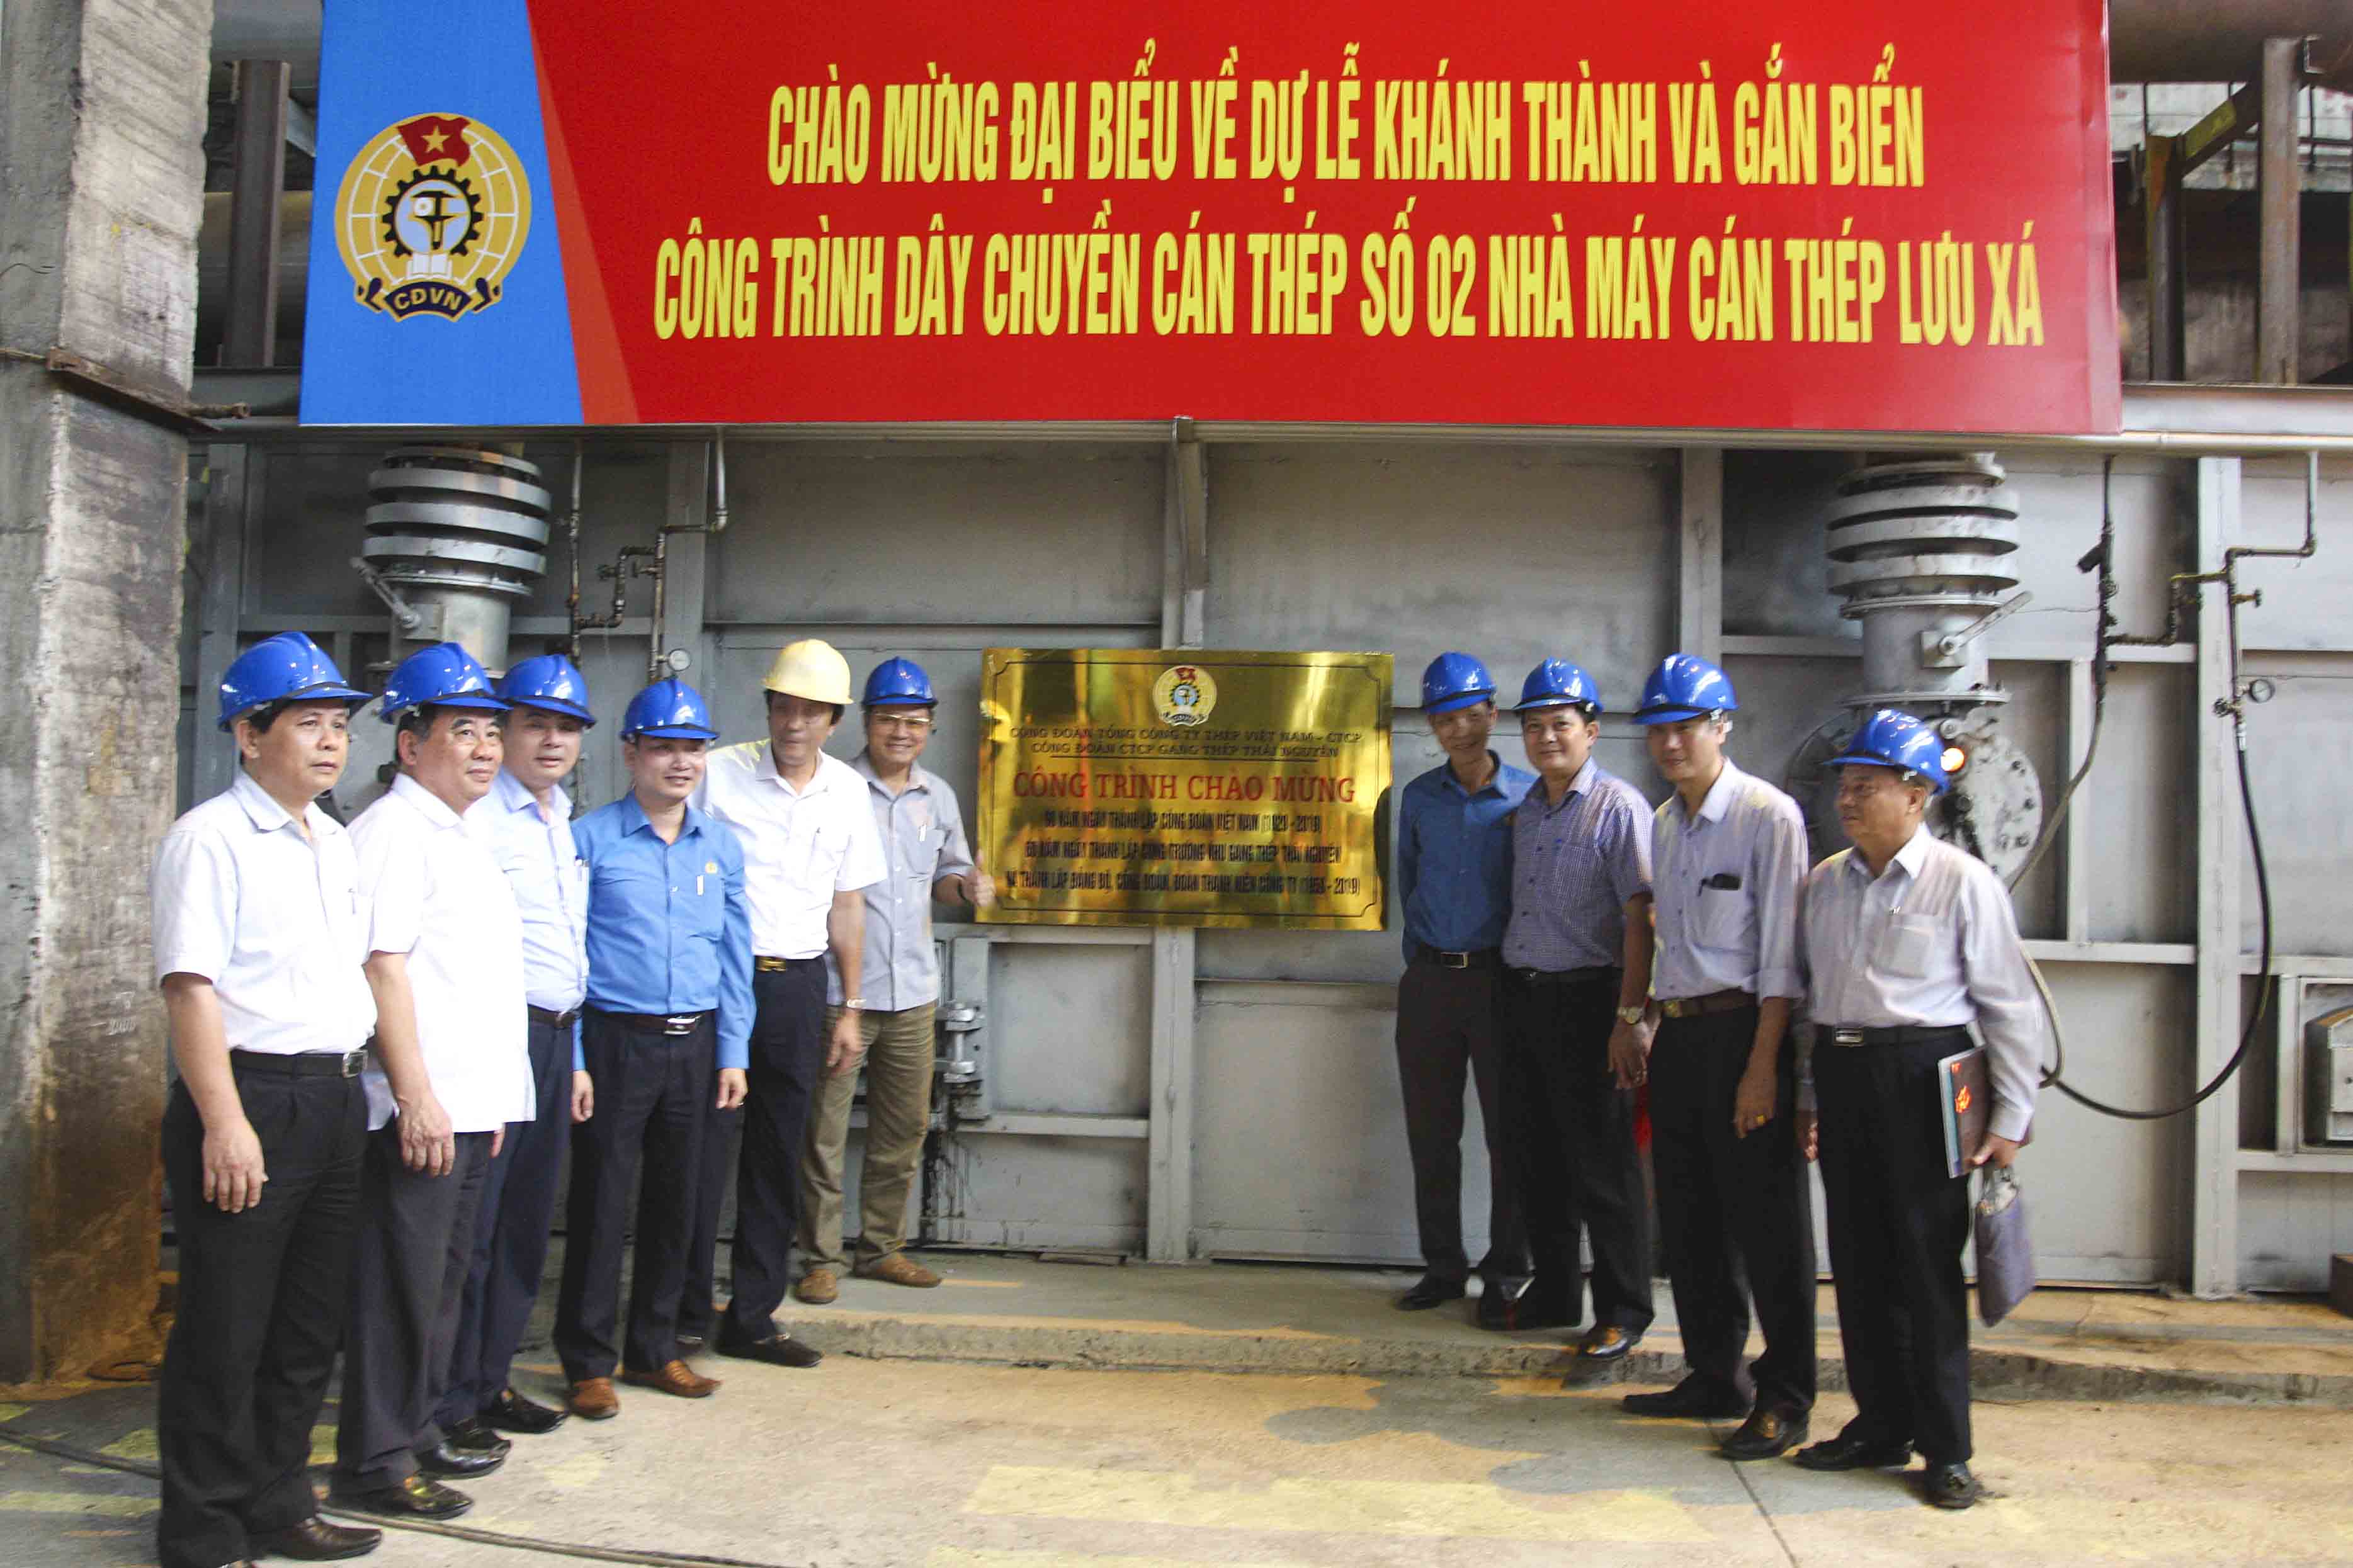 Dây chuyền cán thép số 2 của Nhà máy Lưu Xá (Gang thép Thái Nguyên) được gắn biển công trình Chào mừng kỷ niệm 90 năm ngày thành lập Công đoàn Việt Nam